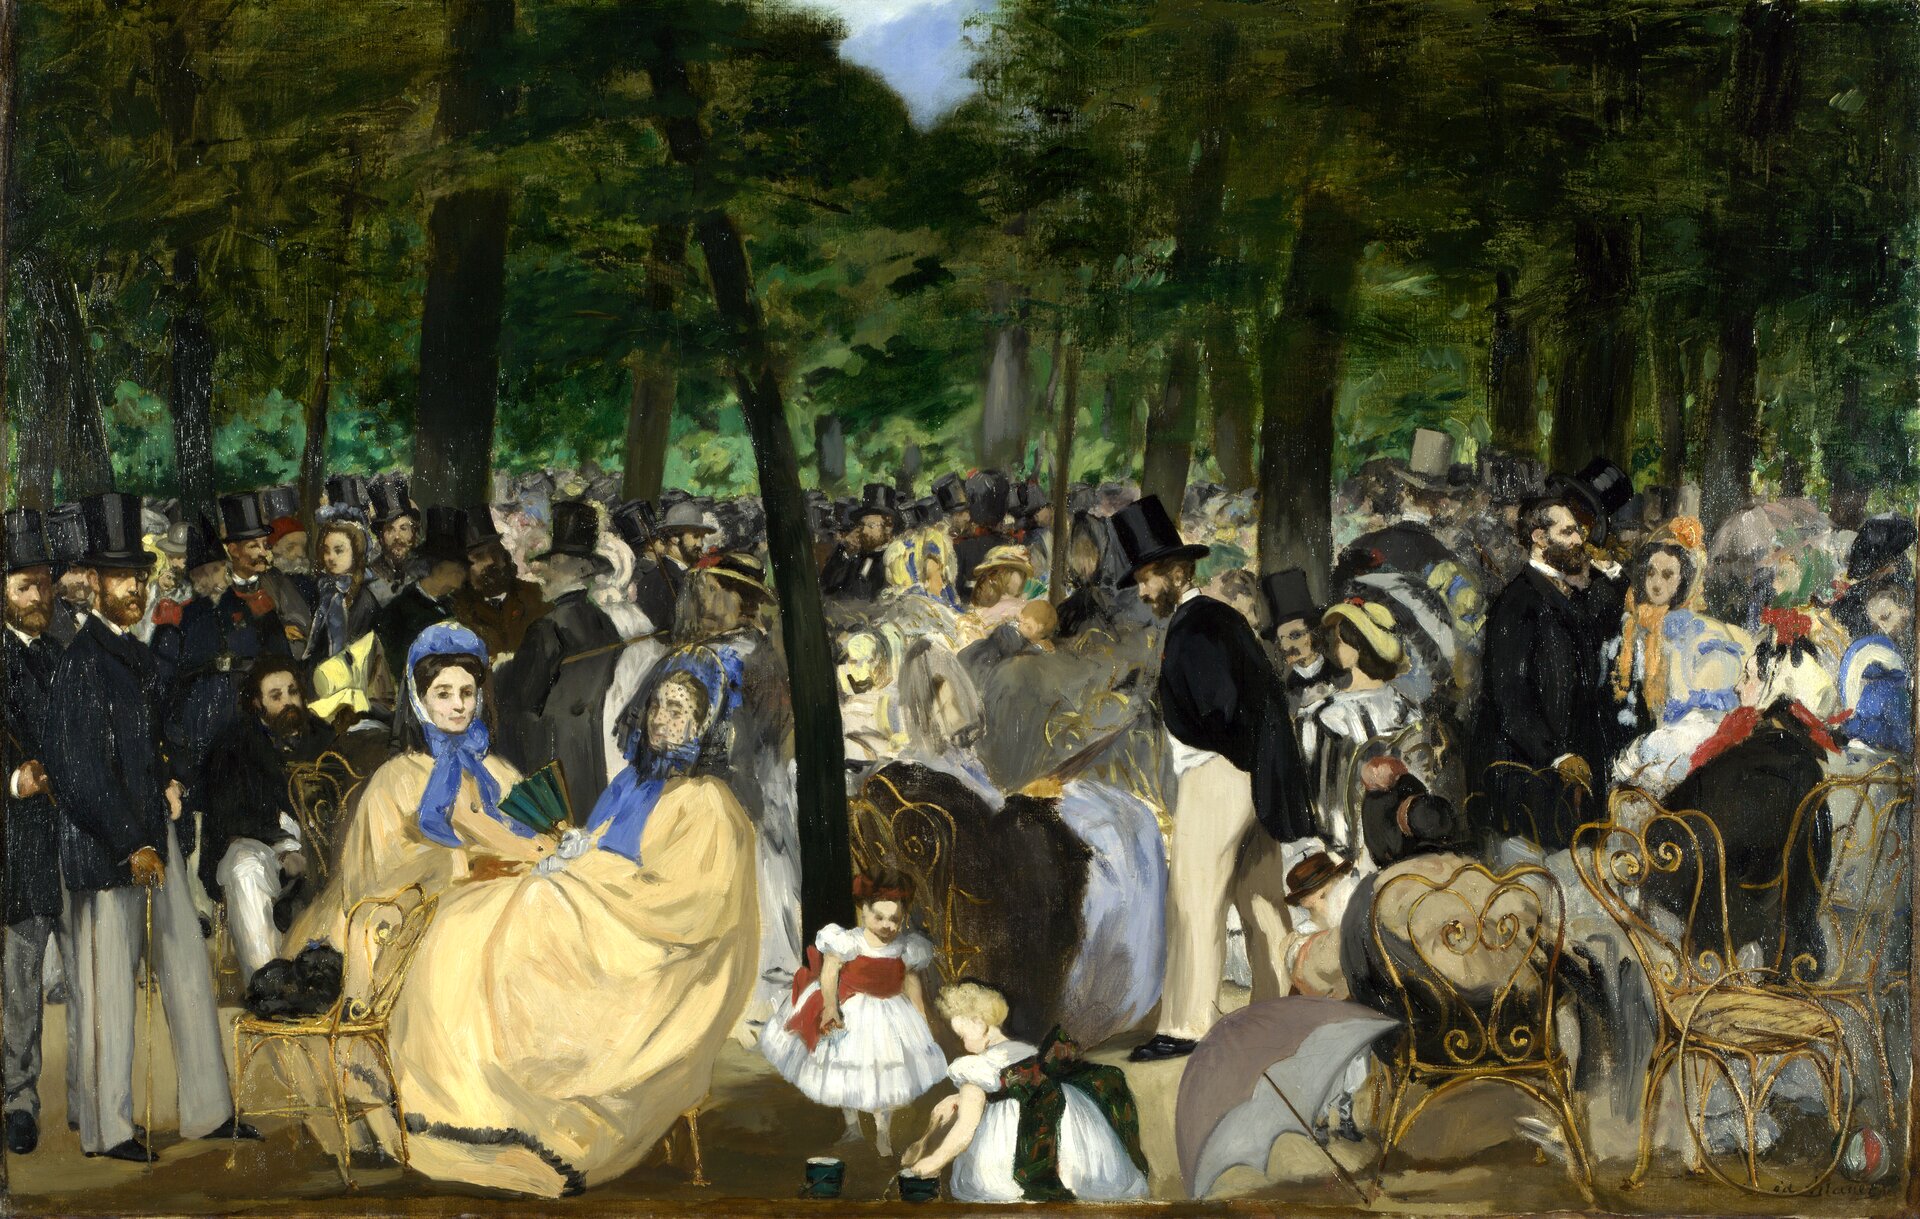 Ilustracja o kształcie poziomego prostokąta przedstawia obraz Édouarda Maneta „Koncert w ogrodzie Tuileries”. Ukazuje tłum postaci podczas koncertu. Na pierwszym planie znajdują się różne przedmioty: porzucona parasolka, puste krzesła. Z lewej strony na krzesłach siedzą dwie kobiety w długich, kremowych sukniach i niebieskich czepkach. Obok nich bawią się dzieci. Mężczyźni z tłumu ubrani są w czarne marynarki i jasne spodnie Na głowach mają założone cylindry. W tle widoczne są drzewa, przez które przebija błękitne niebo.